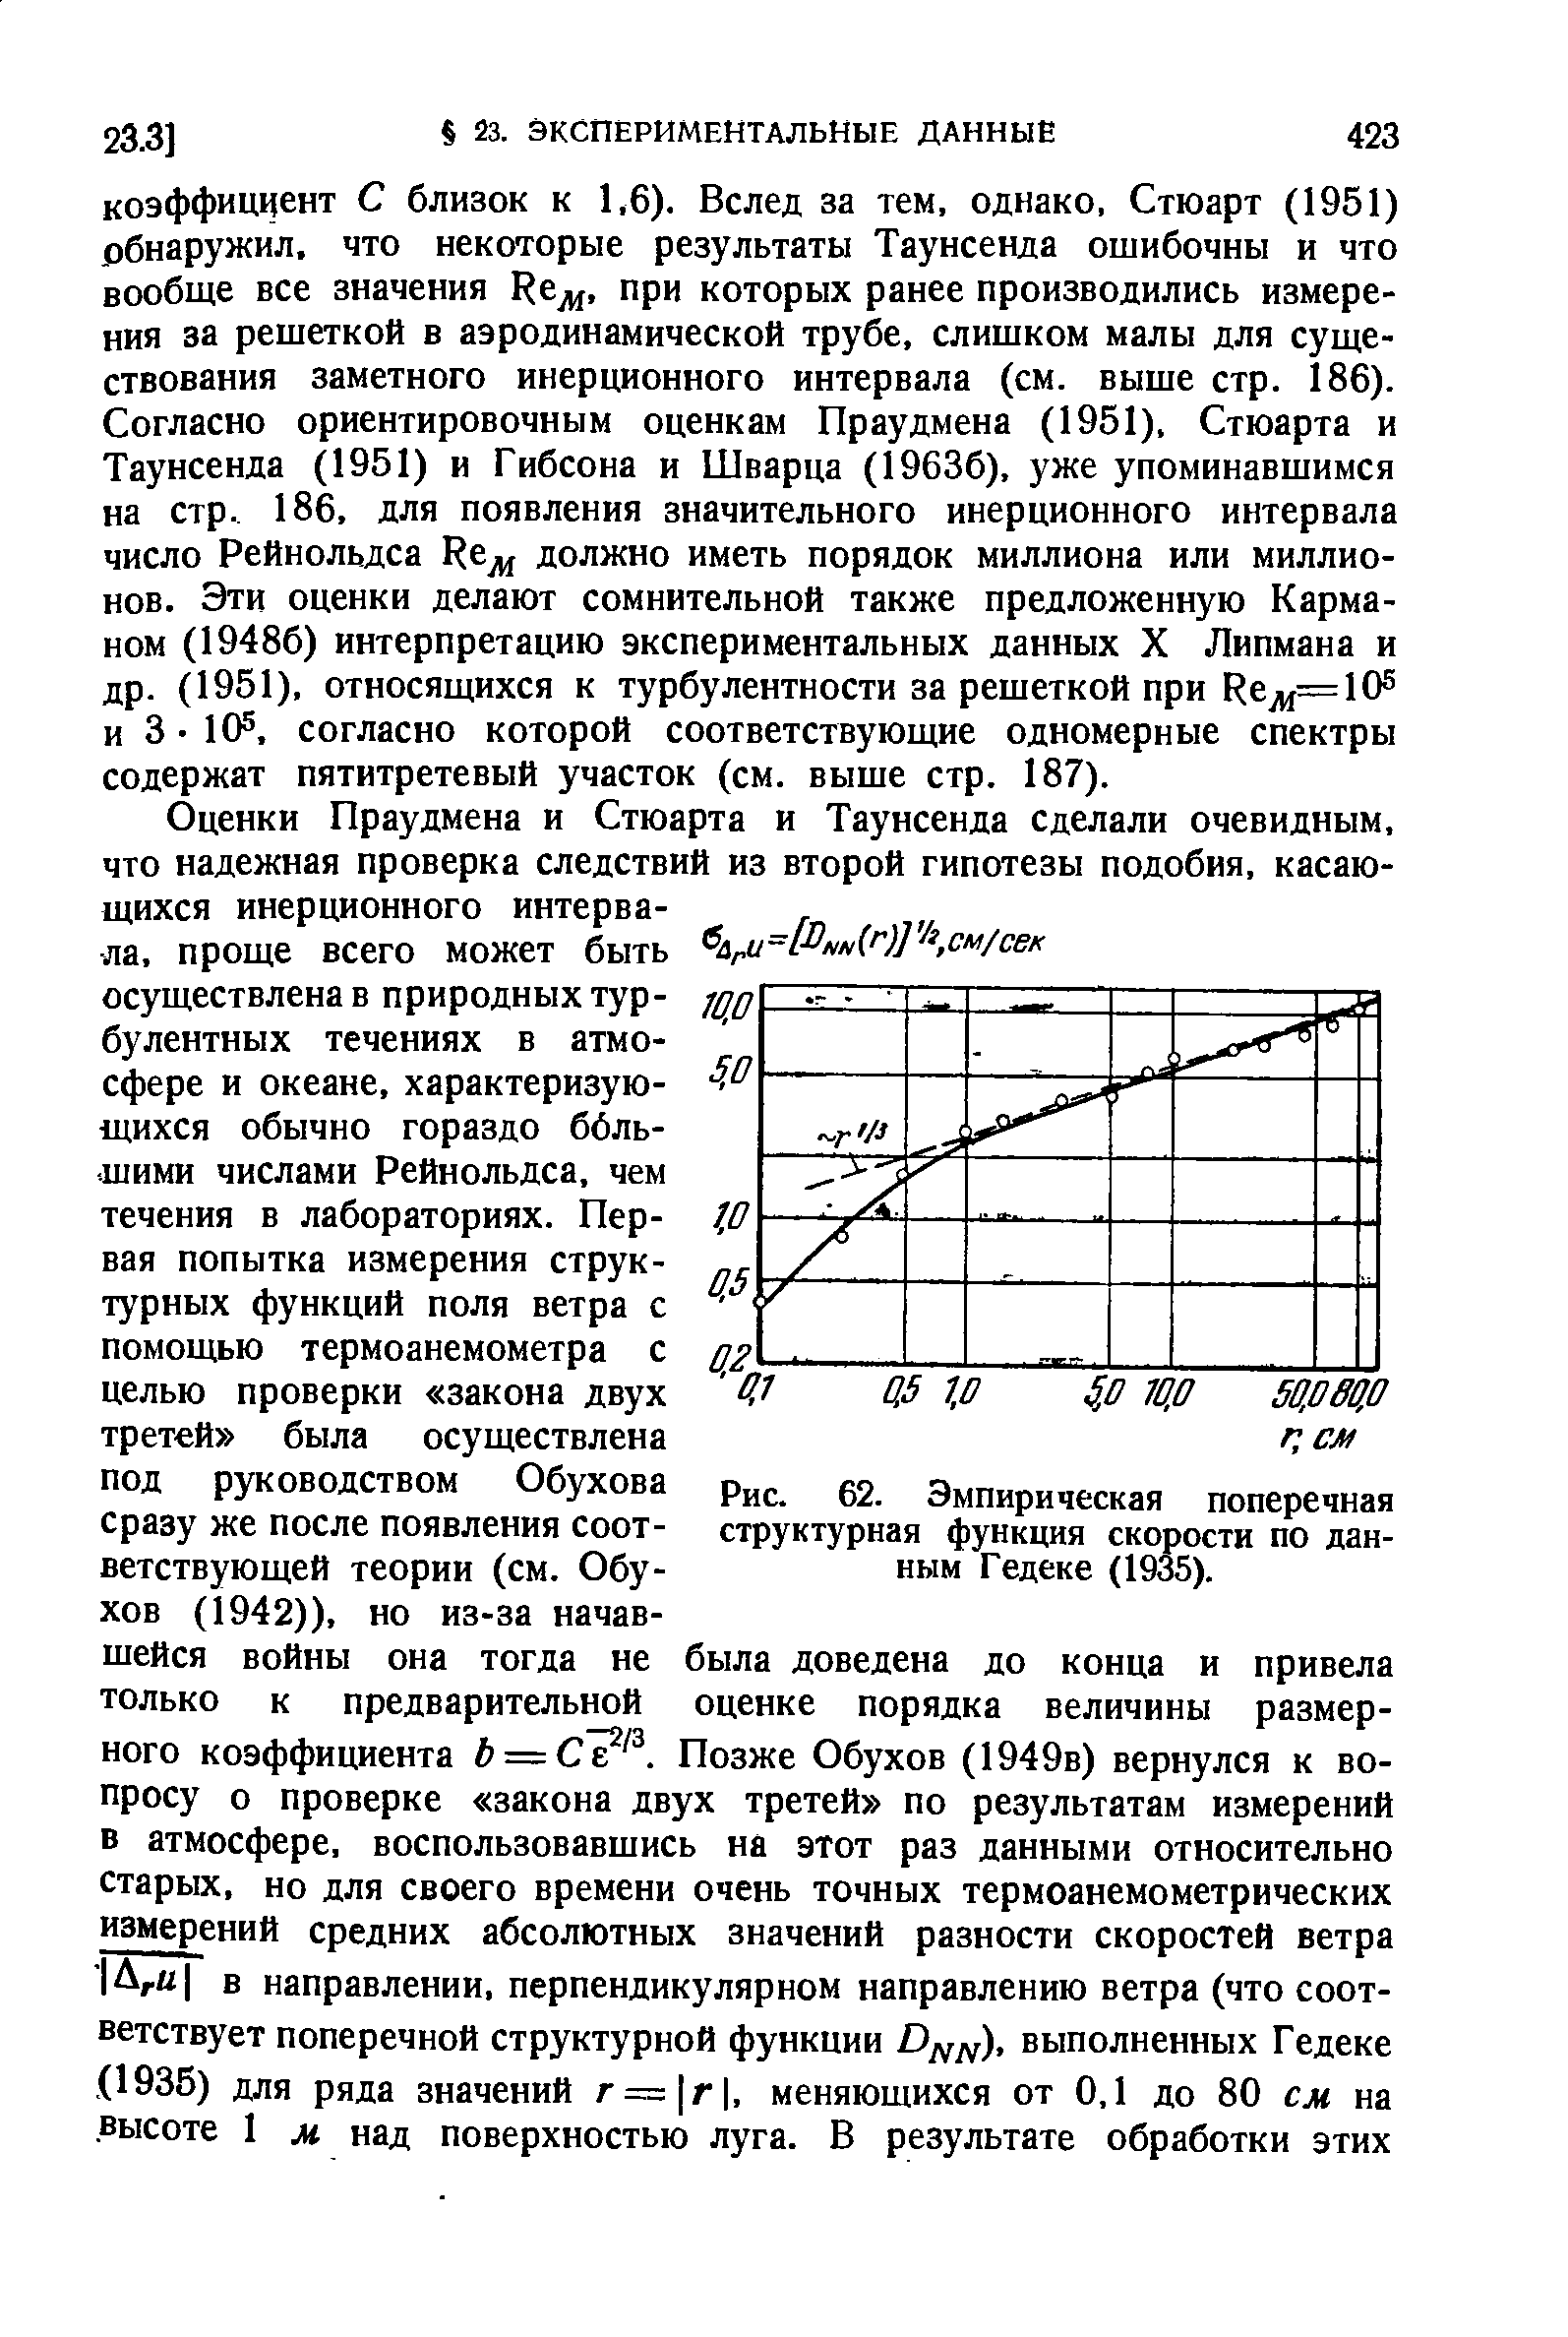 Рис. 62. Эмпирическая поперечная структурная функция скорости по данным Гедеке (1935).
